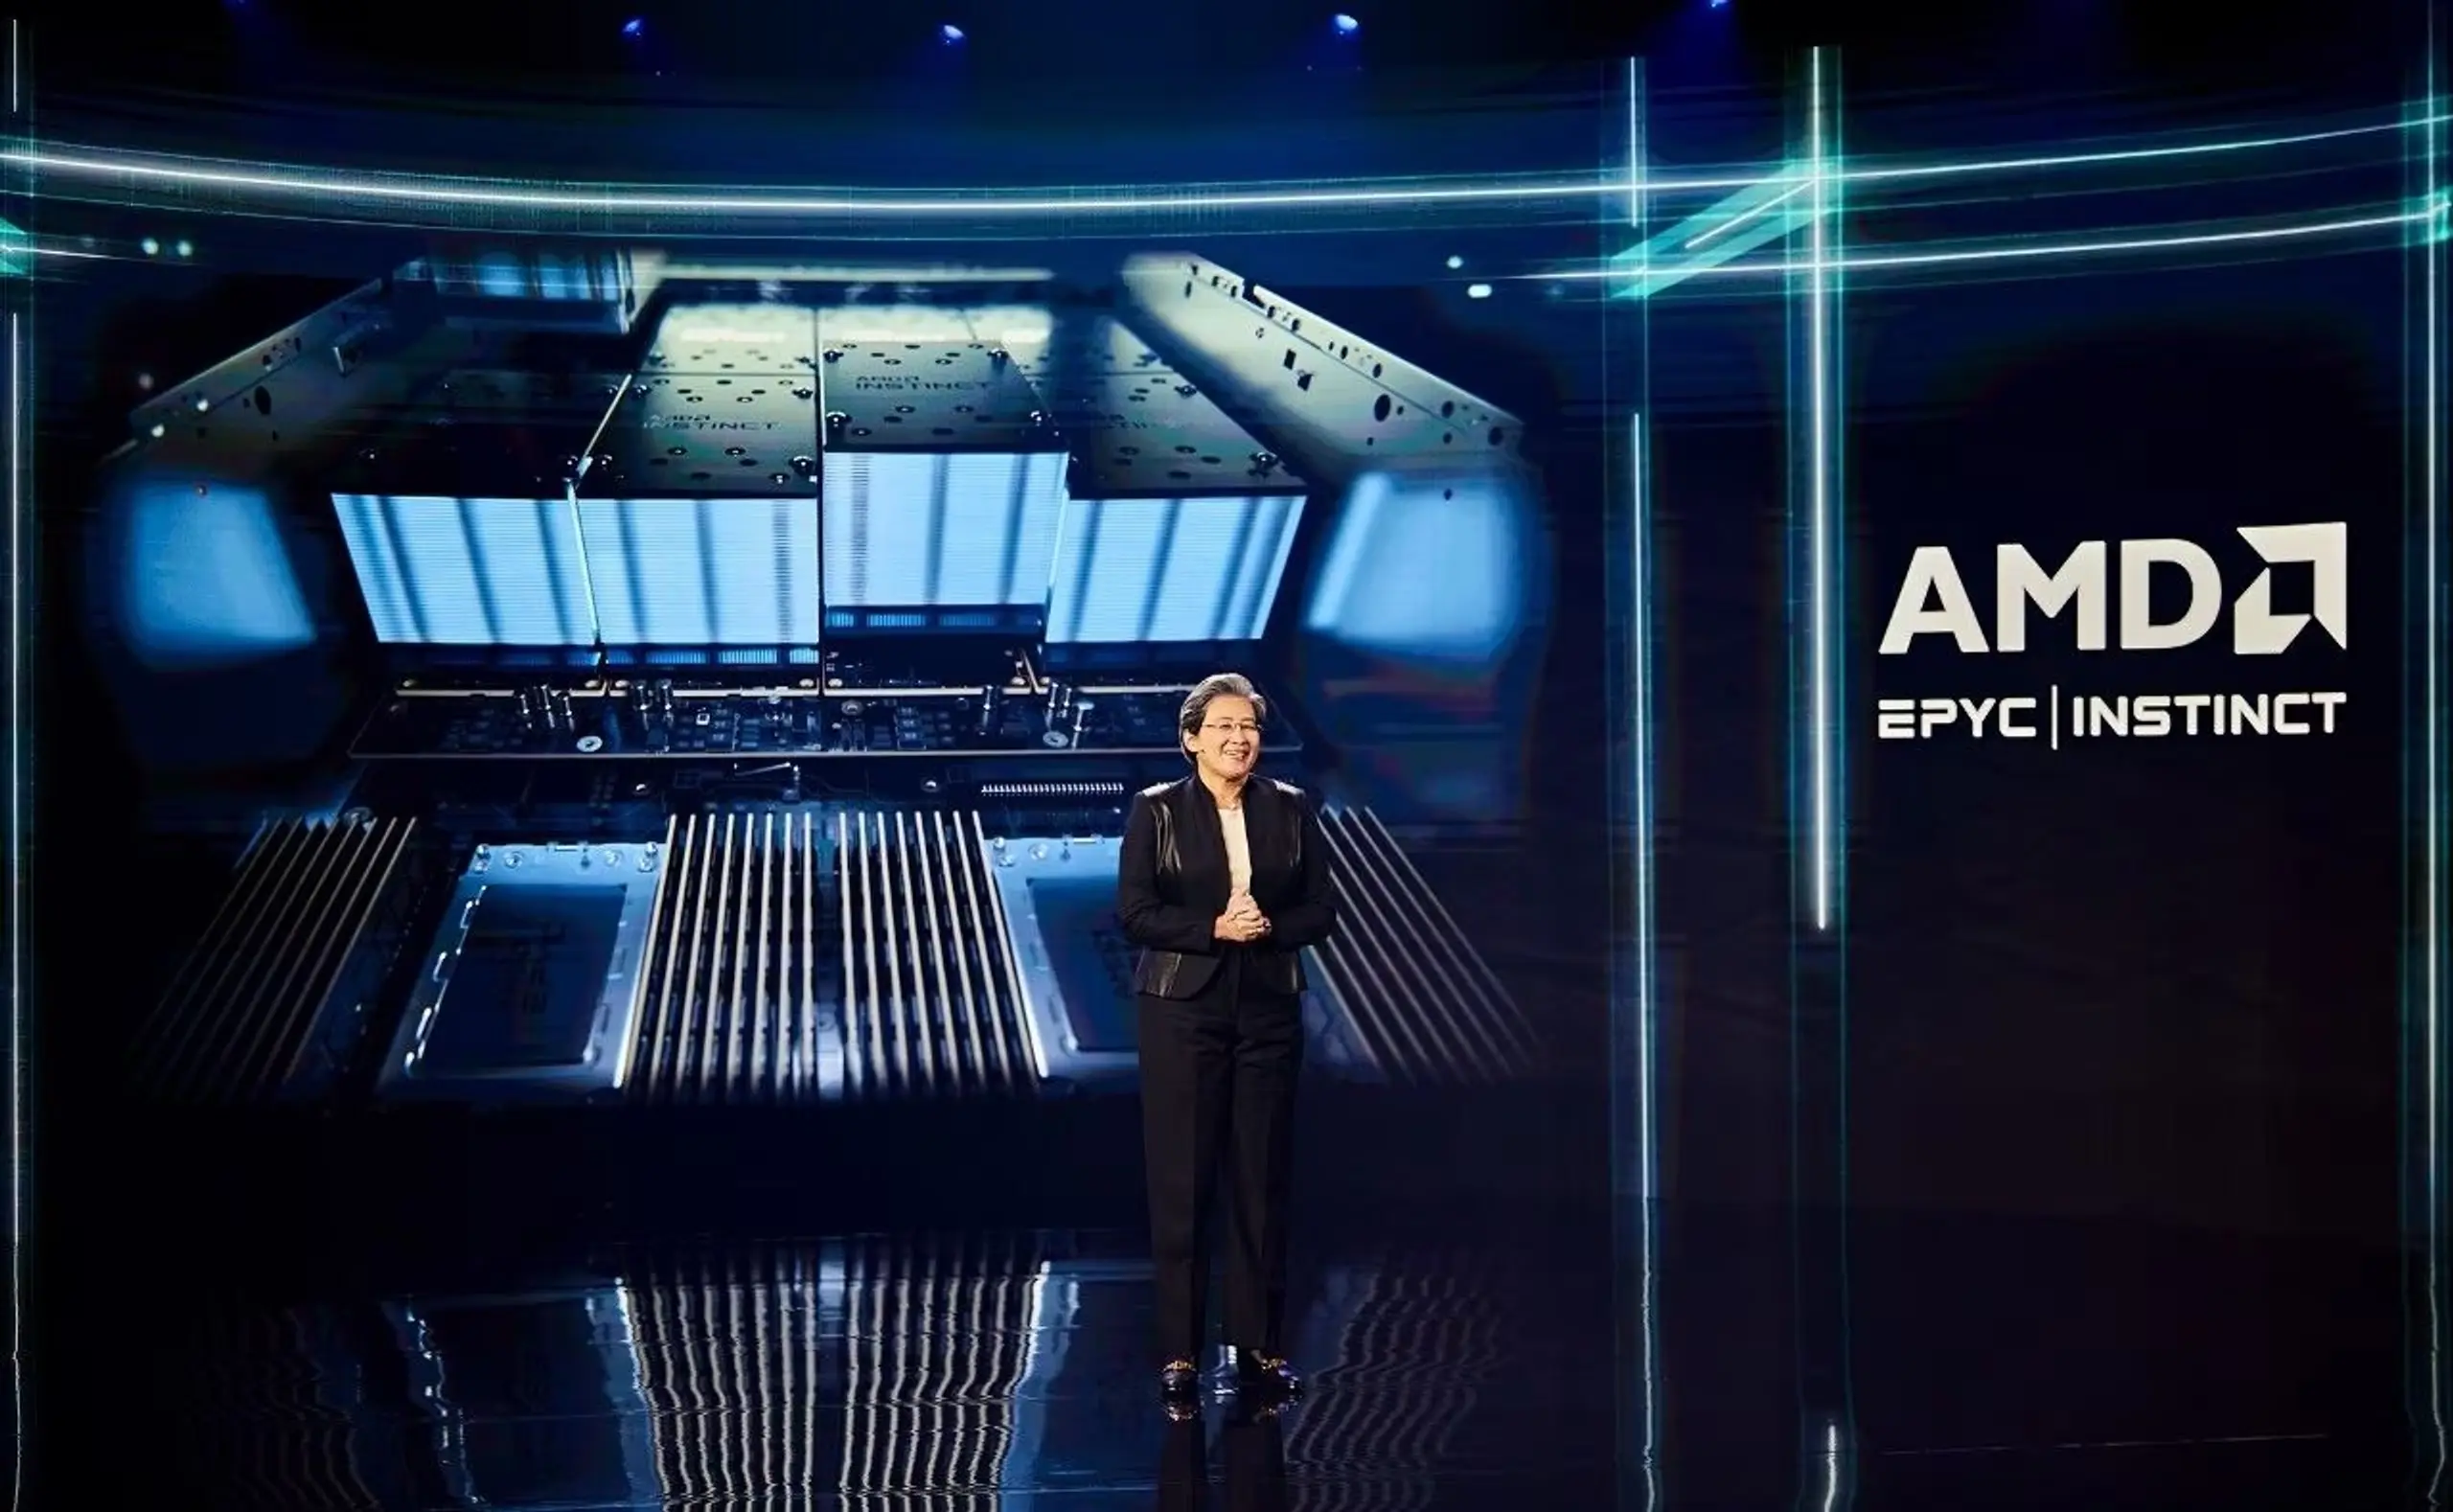 AMD CEO Lisa T. Su